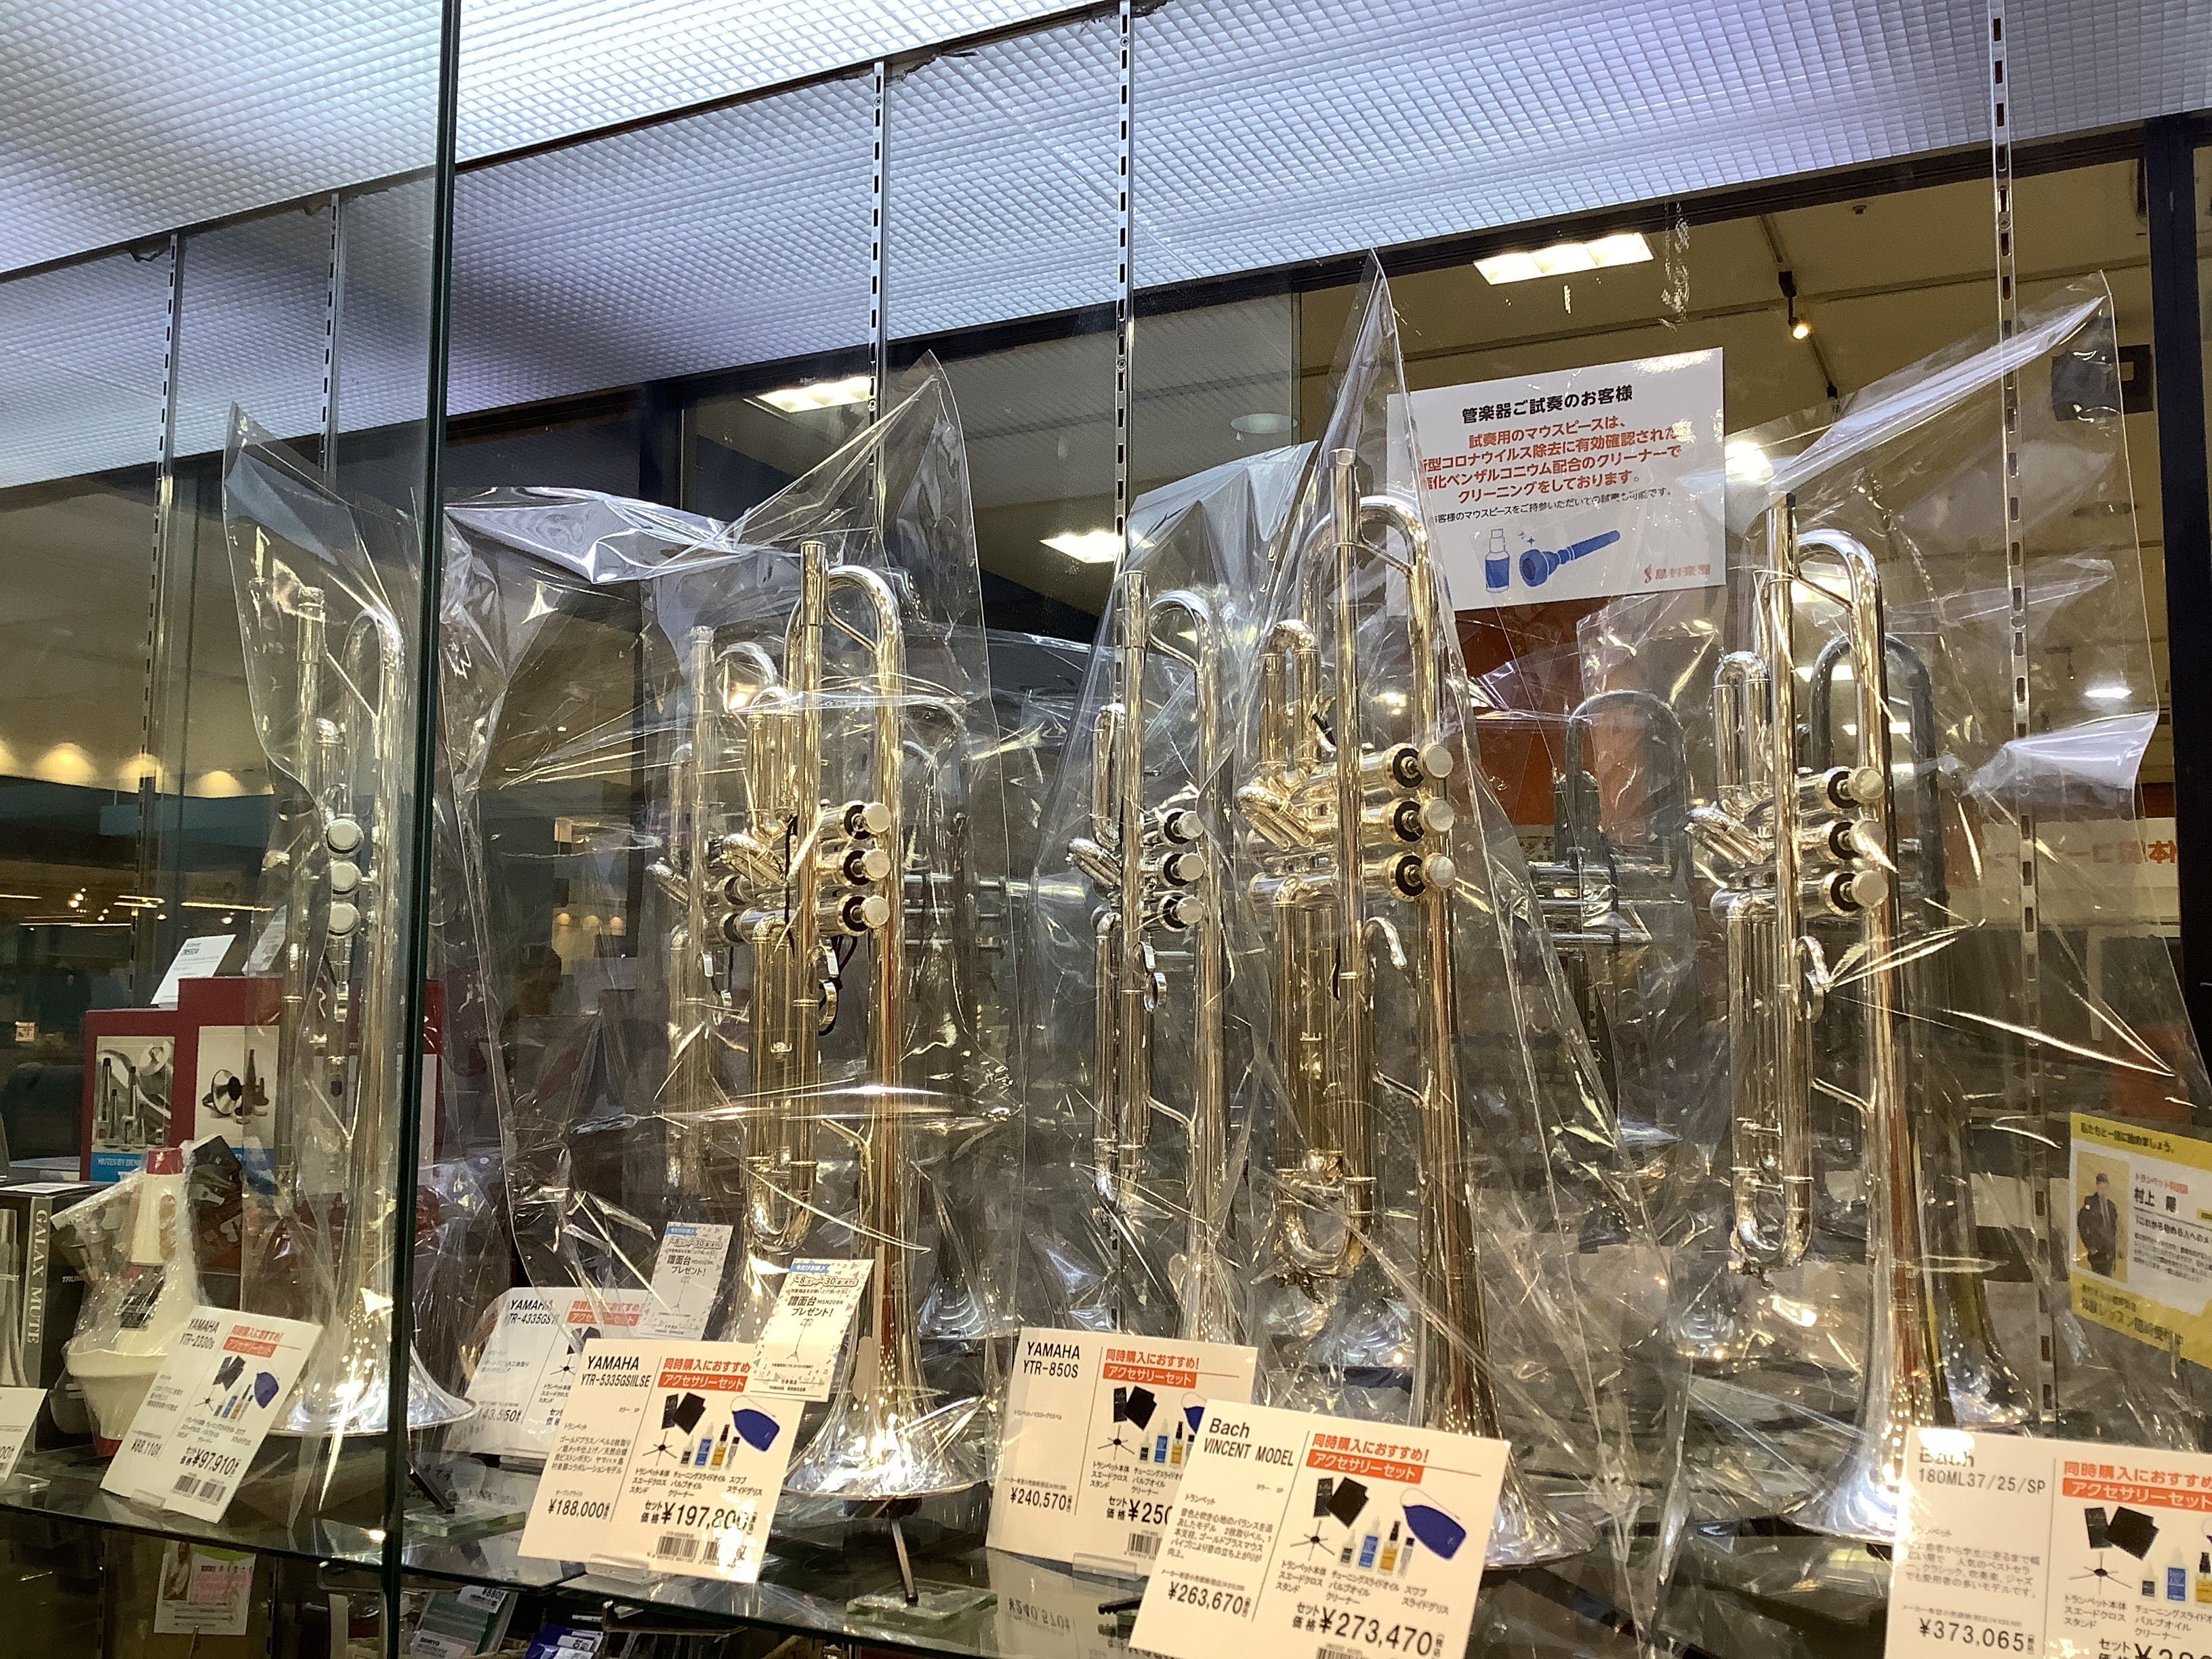 島村楽器札幌平岡店 管楽器担当の井上です。 6月に入り、札幌平岡店にトランペットがいくつか入荷したのでまとめて紹介します♪ 数あるトランペットの中でも人気のある商品が集まりました。店頭では試奏も可能ですので是非お試しください♪